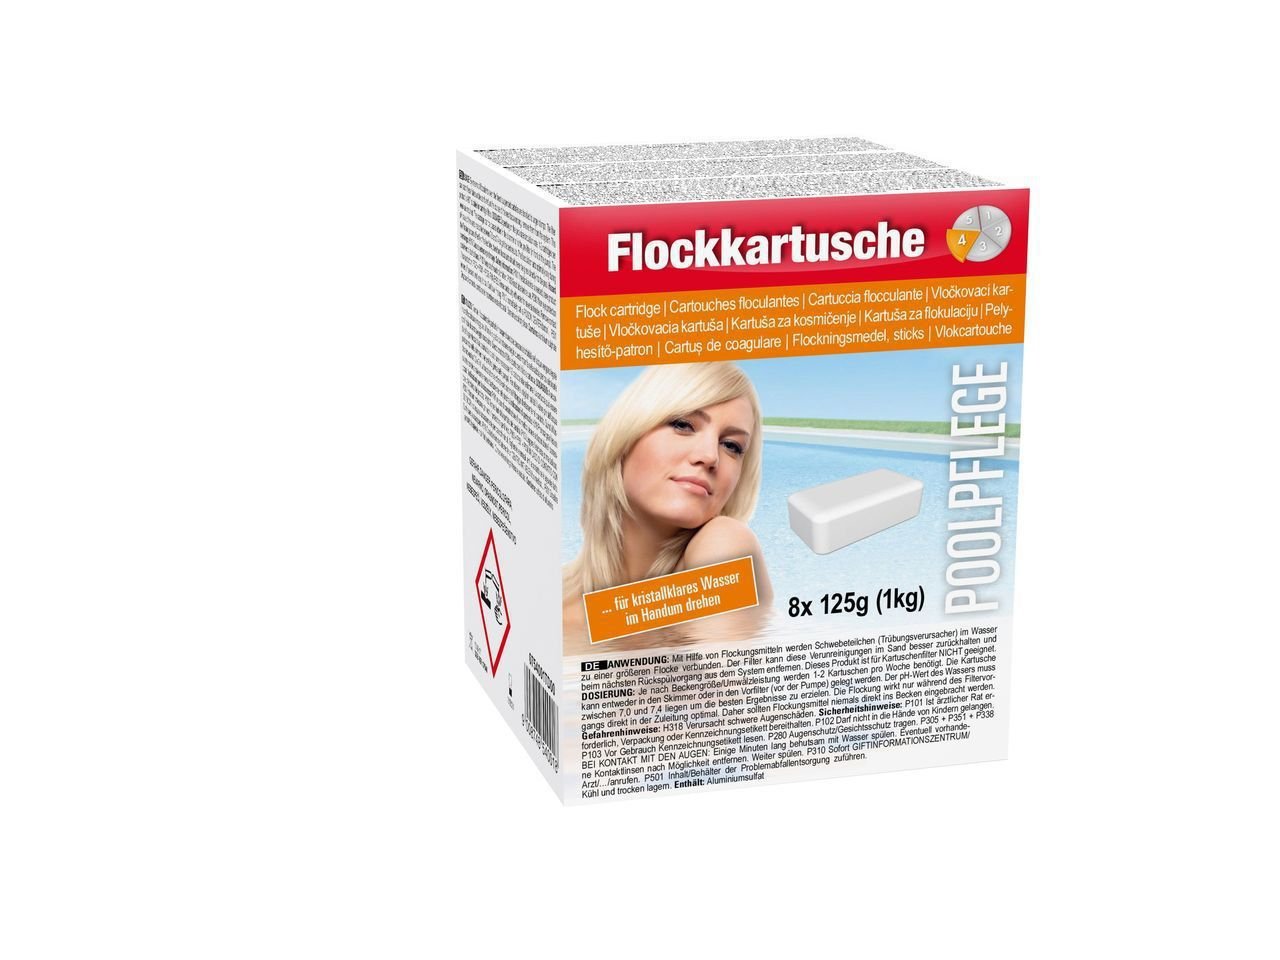 Steinbach Flockkartusche 1kg, Flockungsmittel Pool, Wasserpflege IN-0754001TDC8